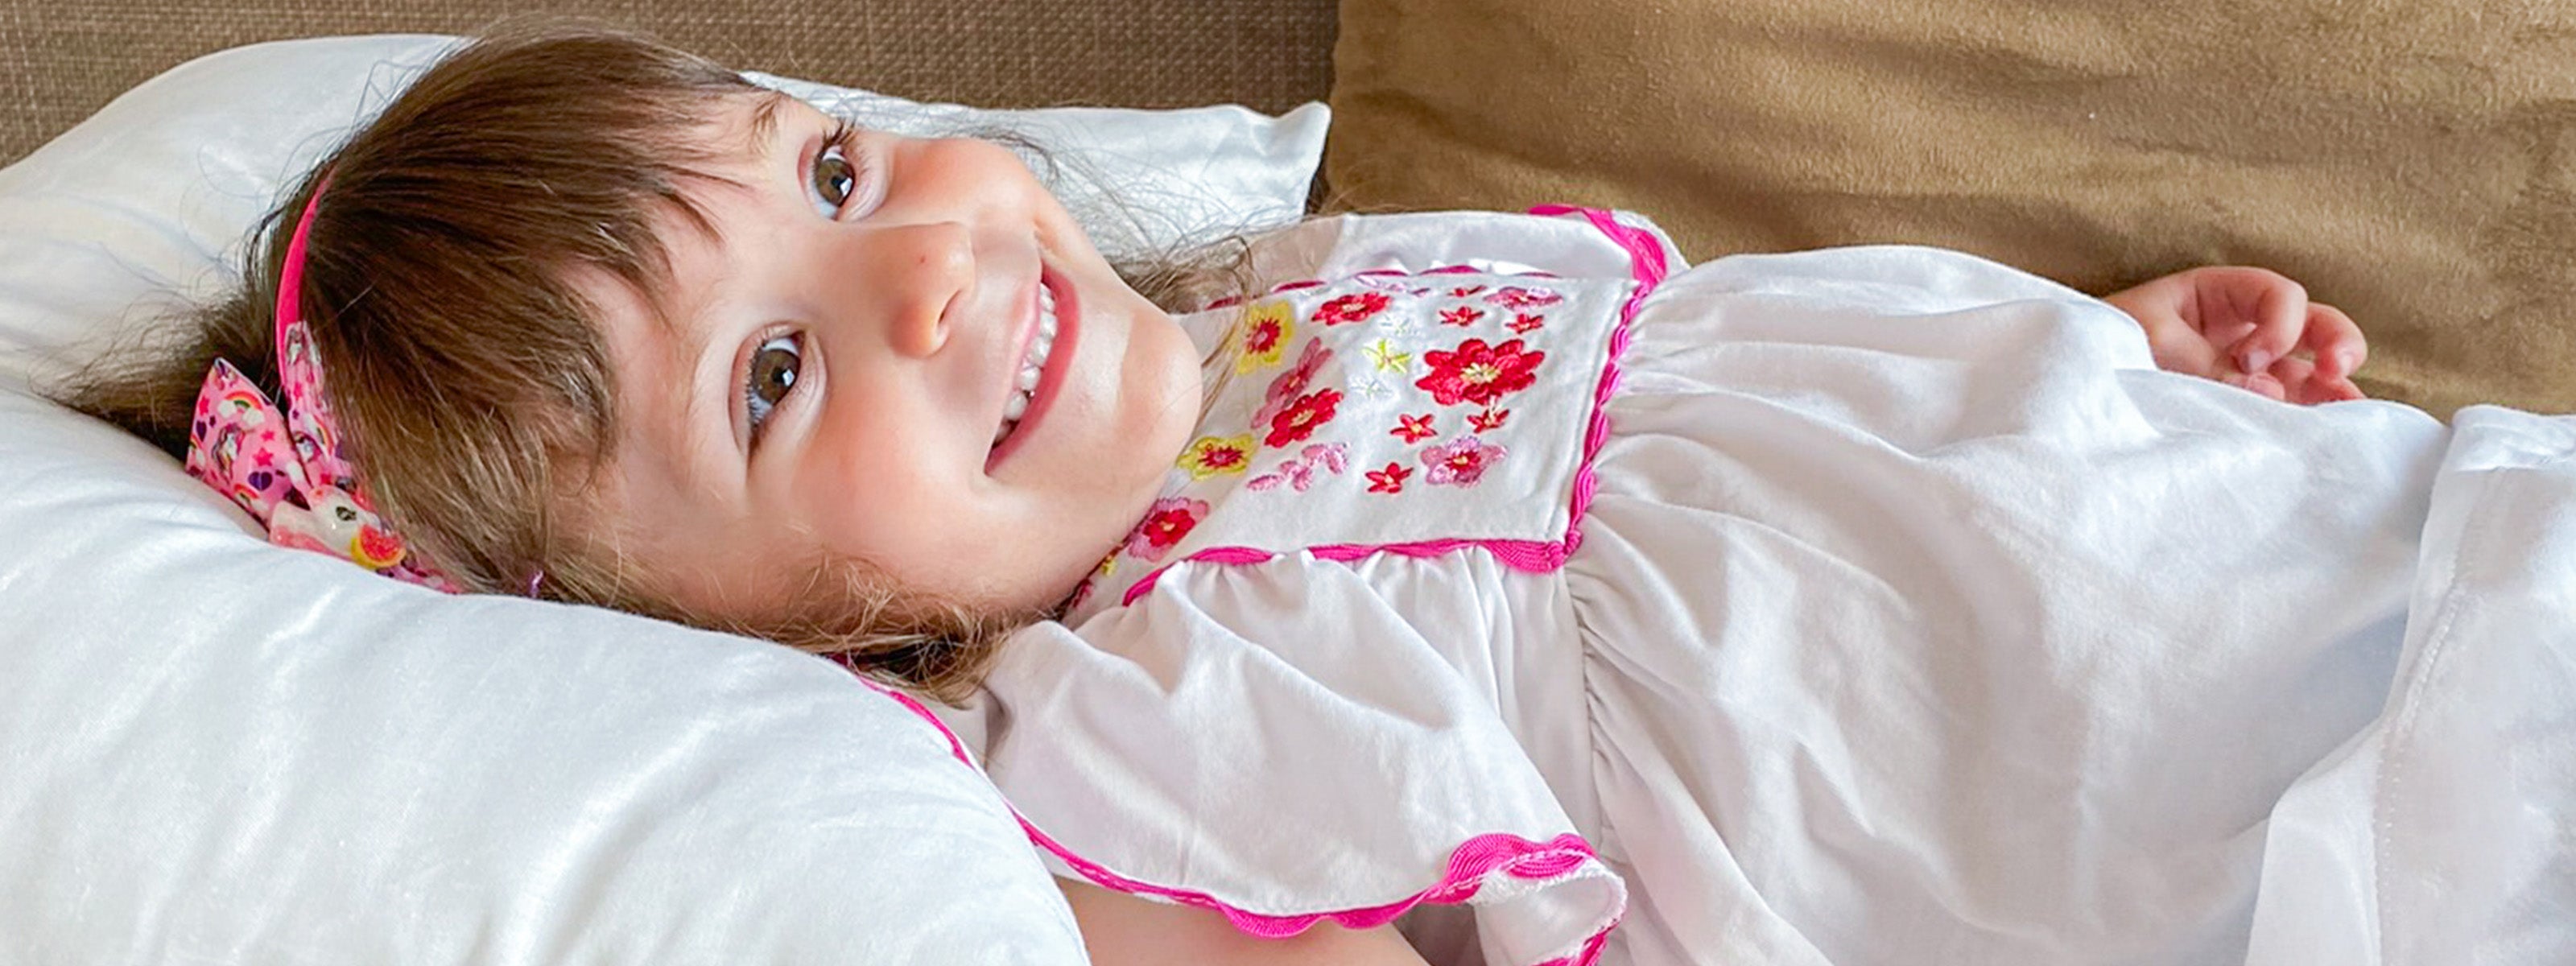 Cuscino antisoffoco: proteggi il sonno tuo e del tuo bambino